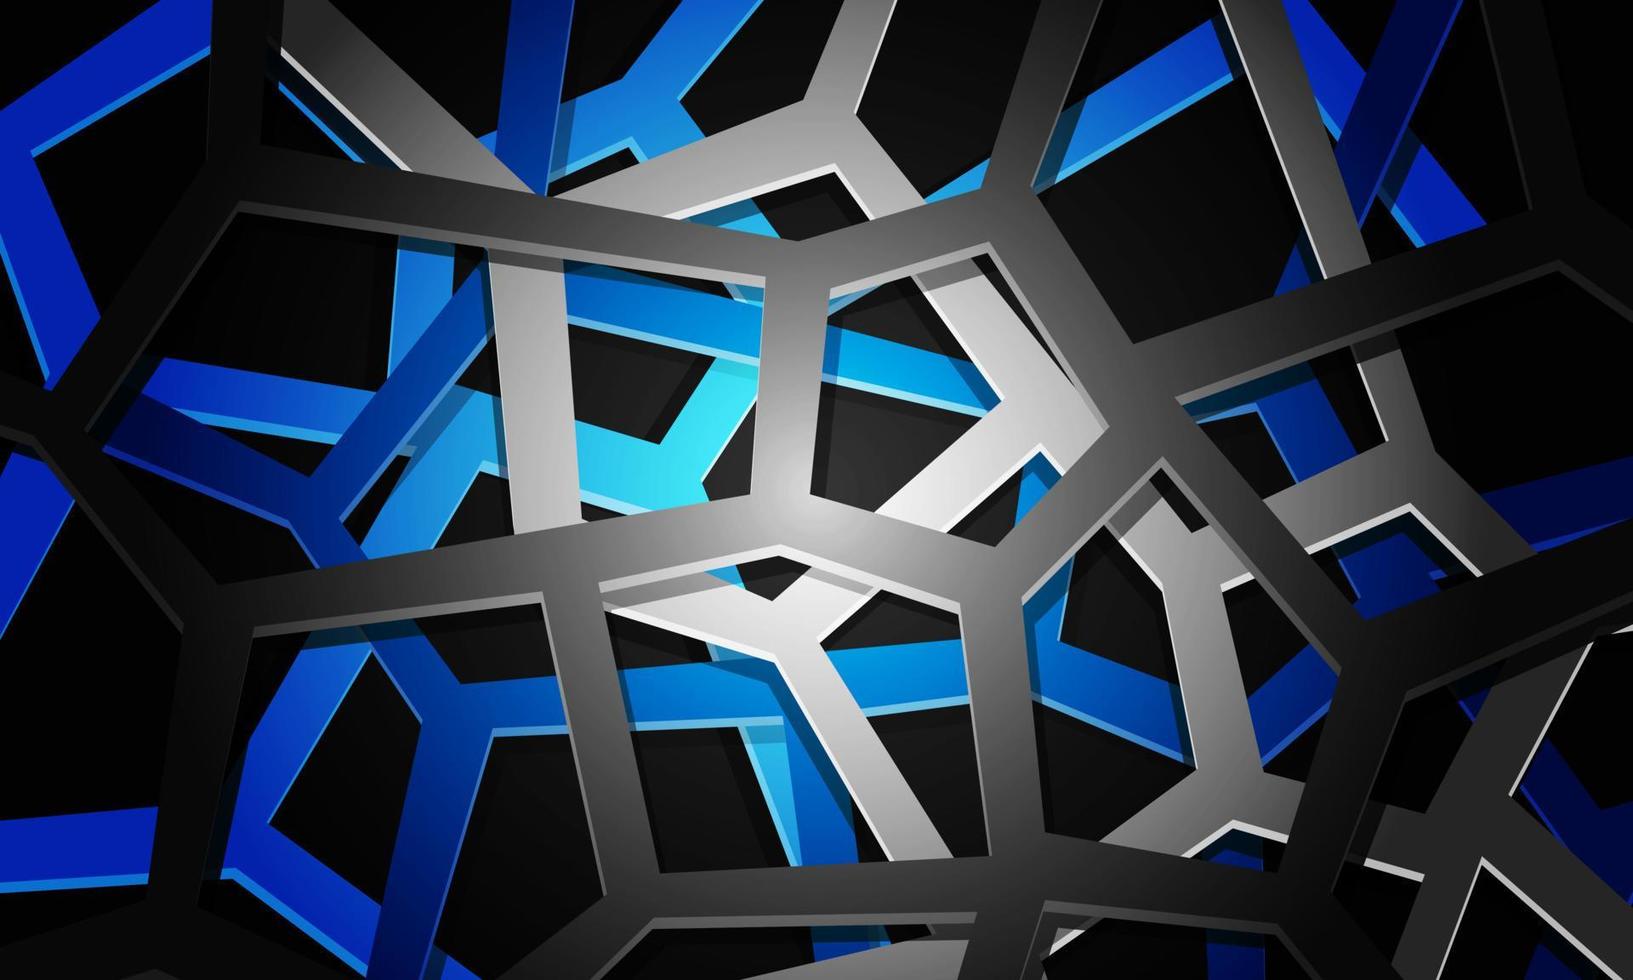 abstrakt Blau grau Linie Gittergewebe geometrisch Überlappung auf schwarz Design modern futuristisch Hintergrund Vektor